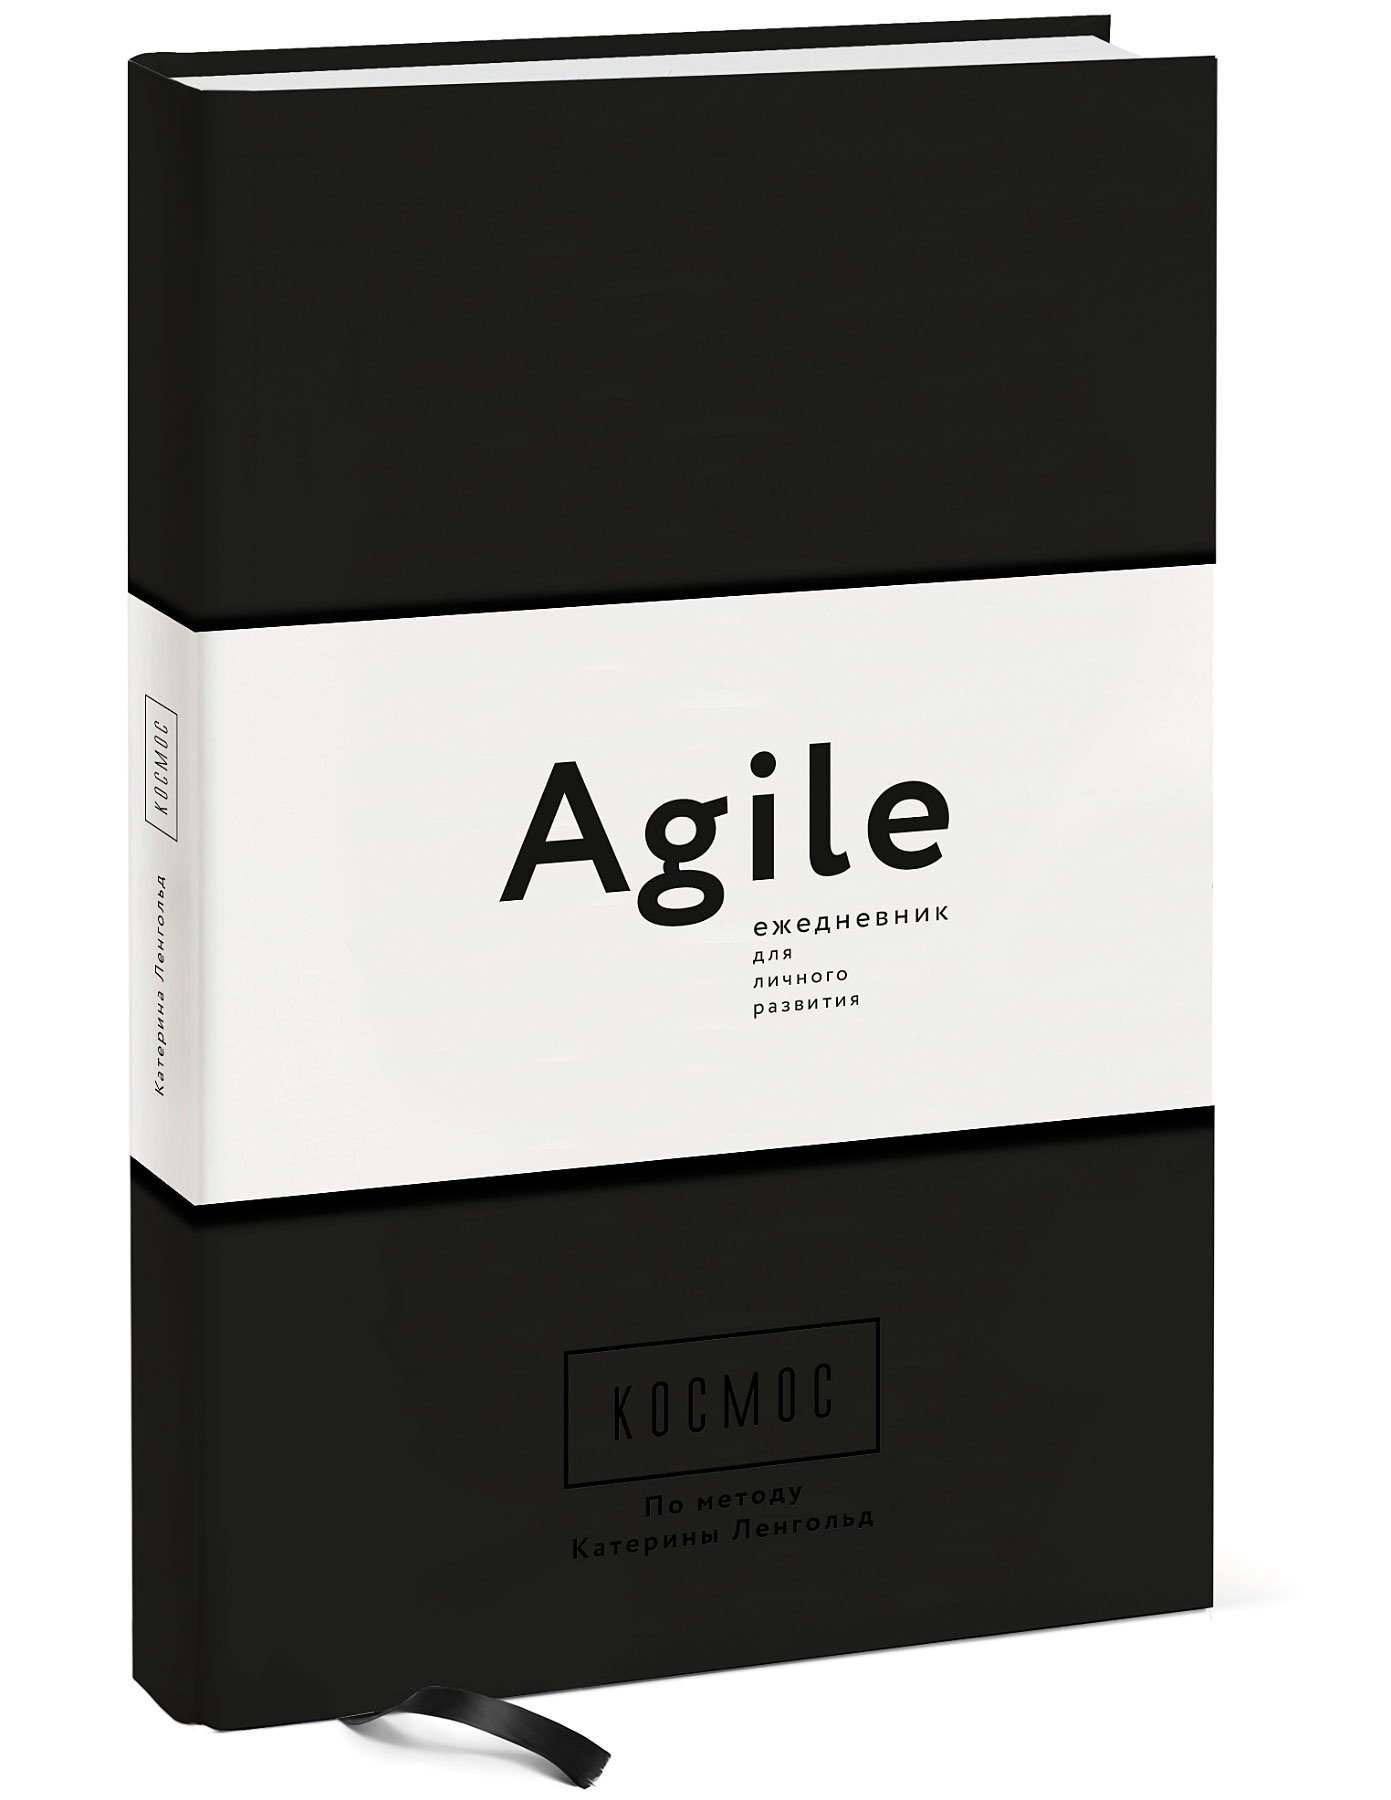 Космос. Agile-ежедневник для личного развития (черная обложка) тв : Ленгольд Катерина